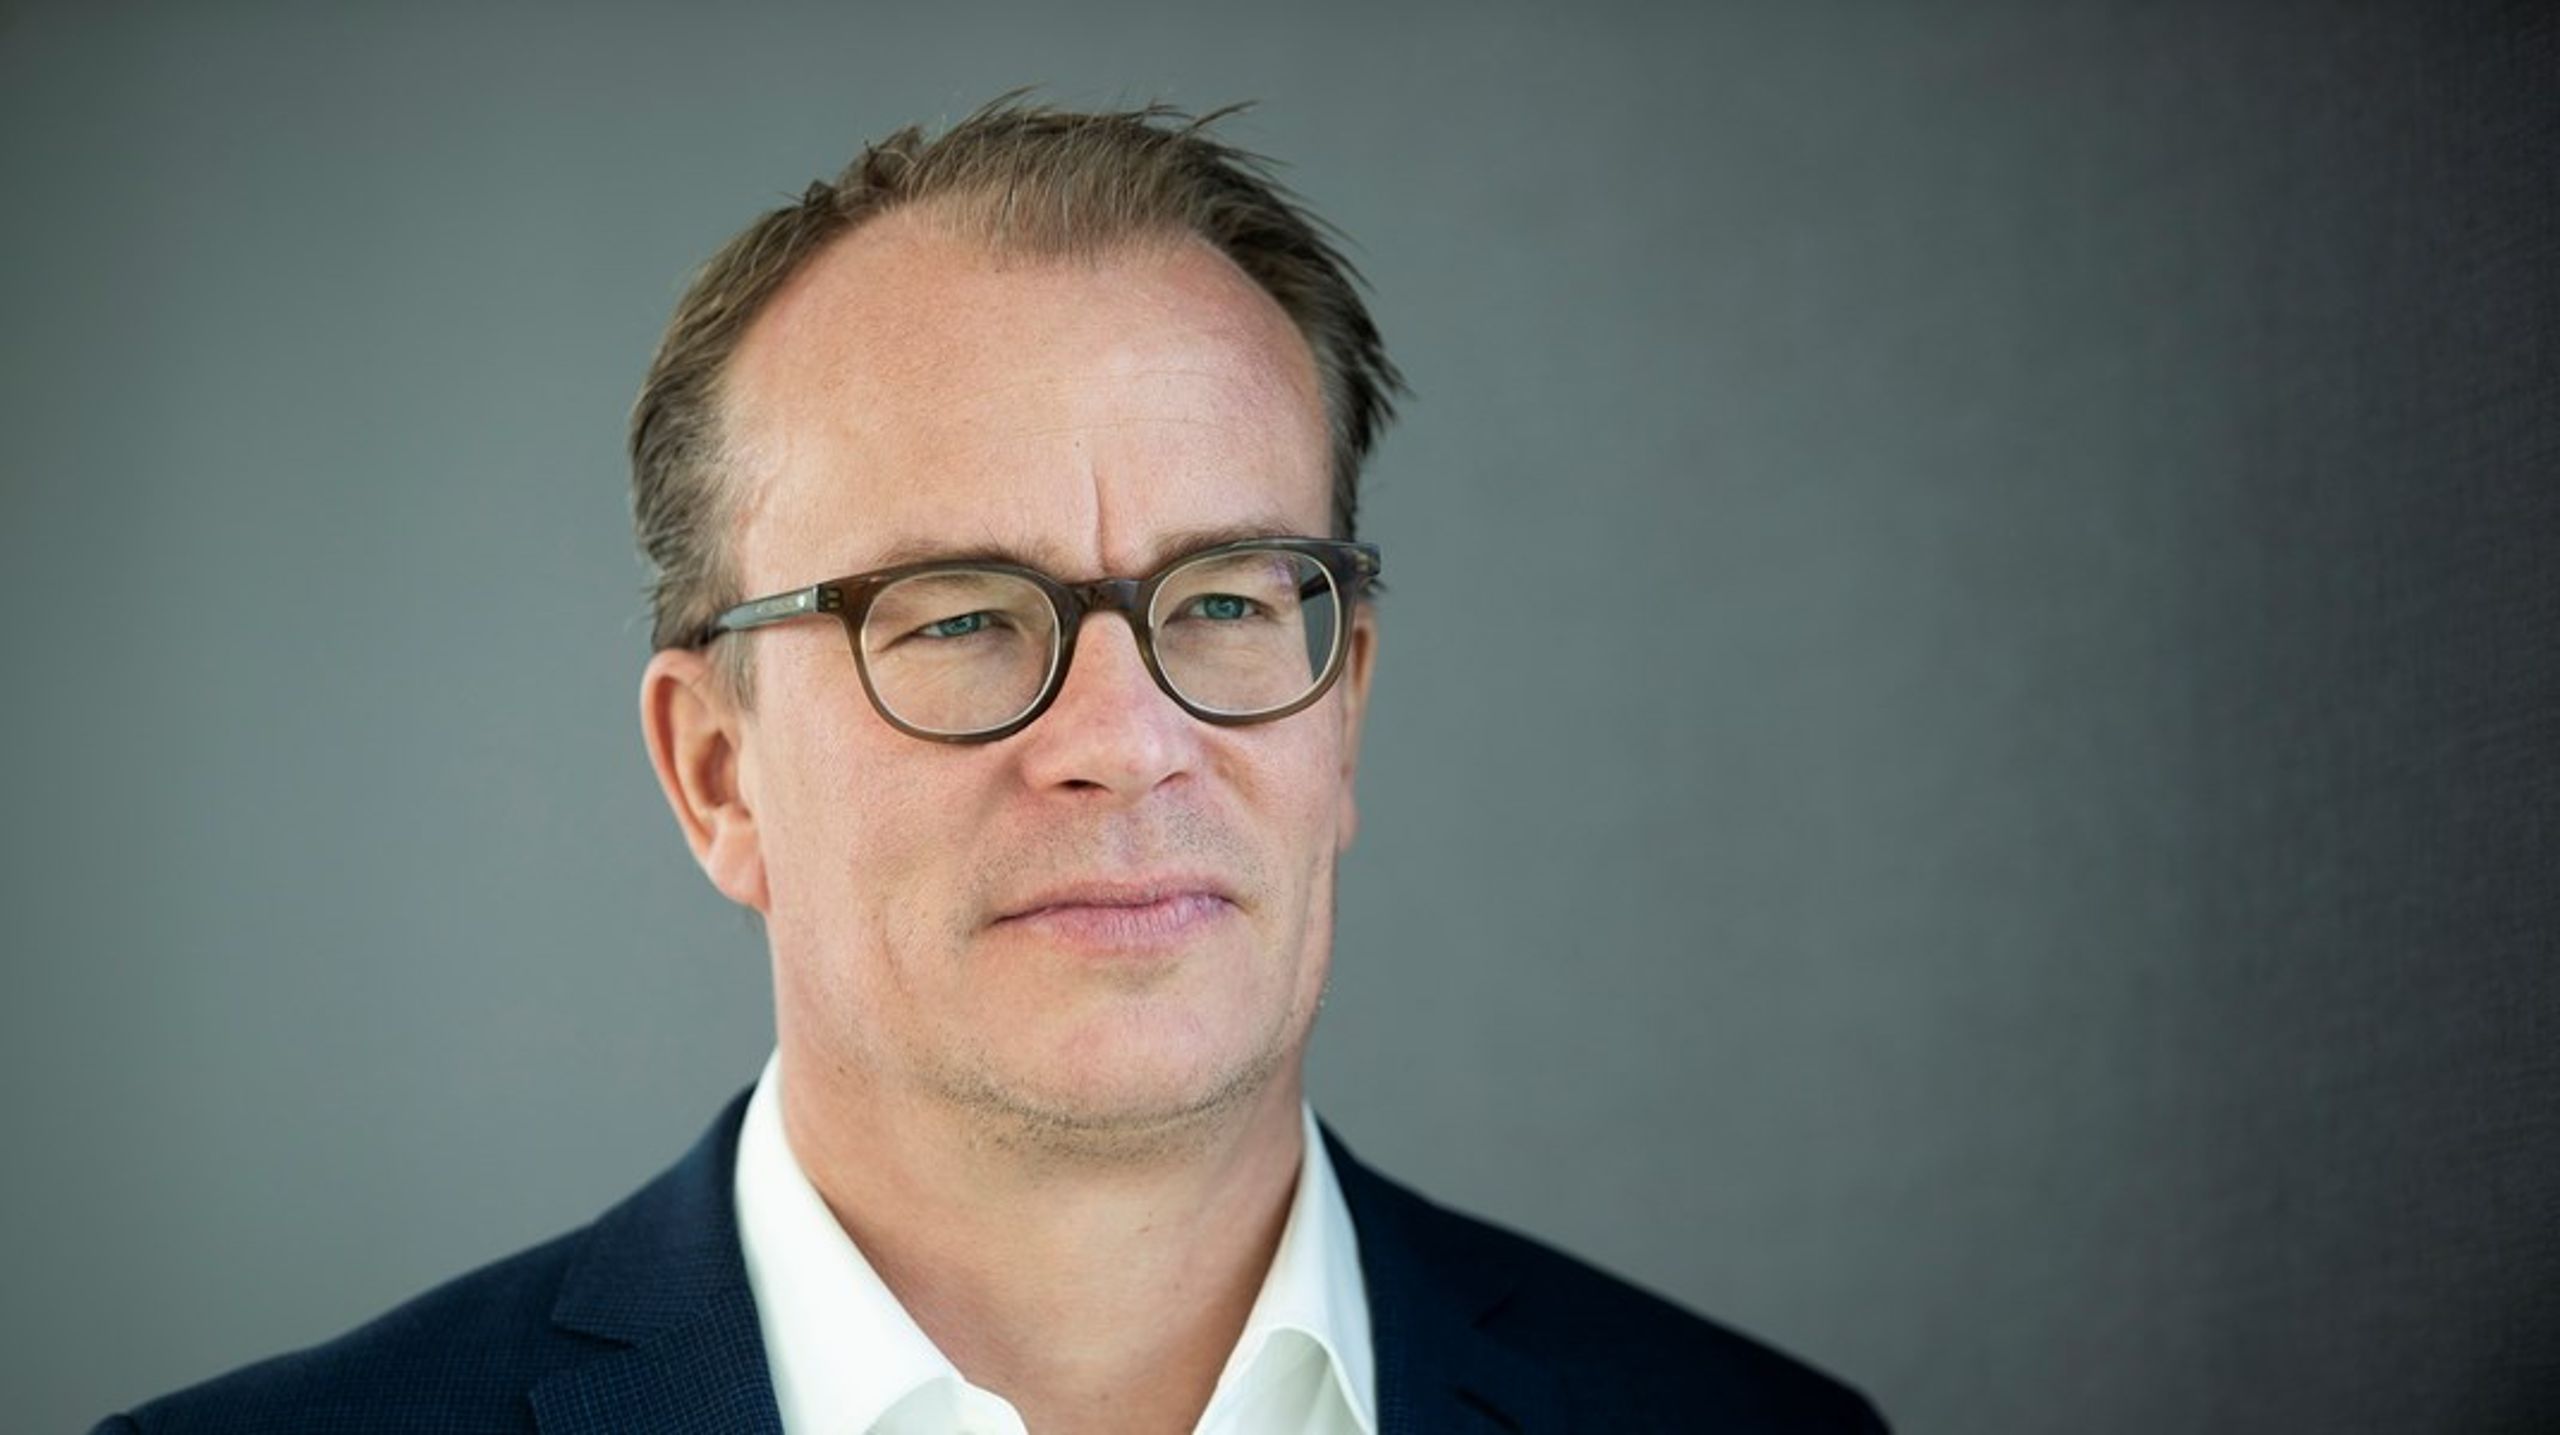 Martin Rossen håber, at&nbsp;medlemskabet i&nbsp;Ellen MacArthur
Foundation vil hjælpe Danfoss med at opnå en cirkulær økonomi